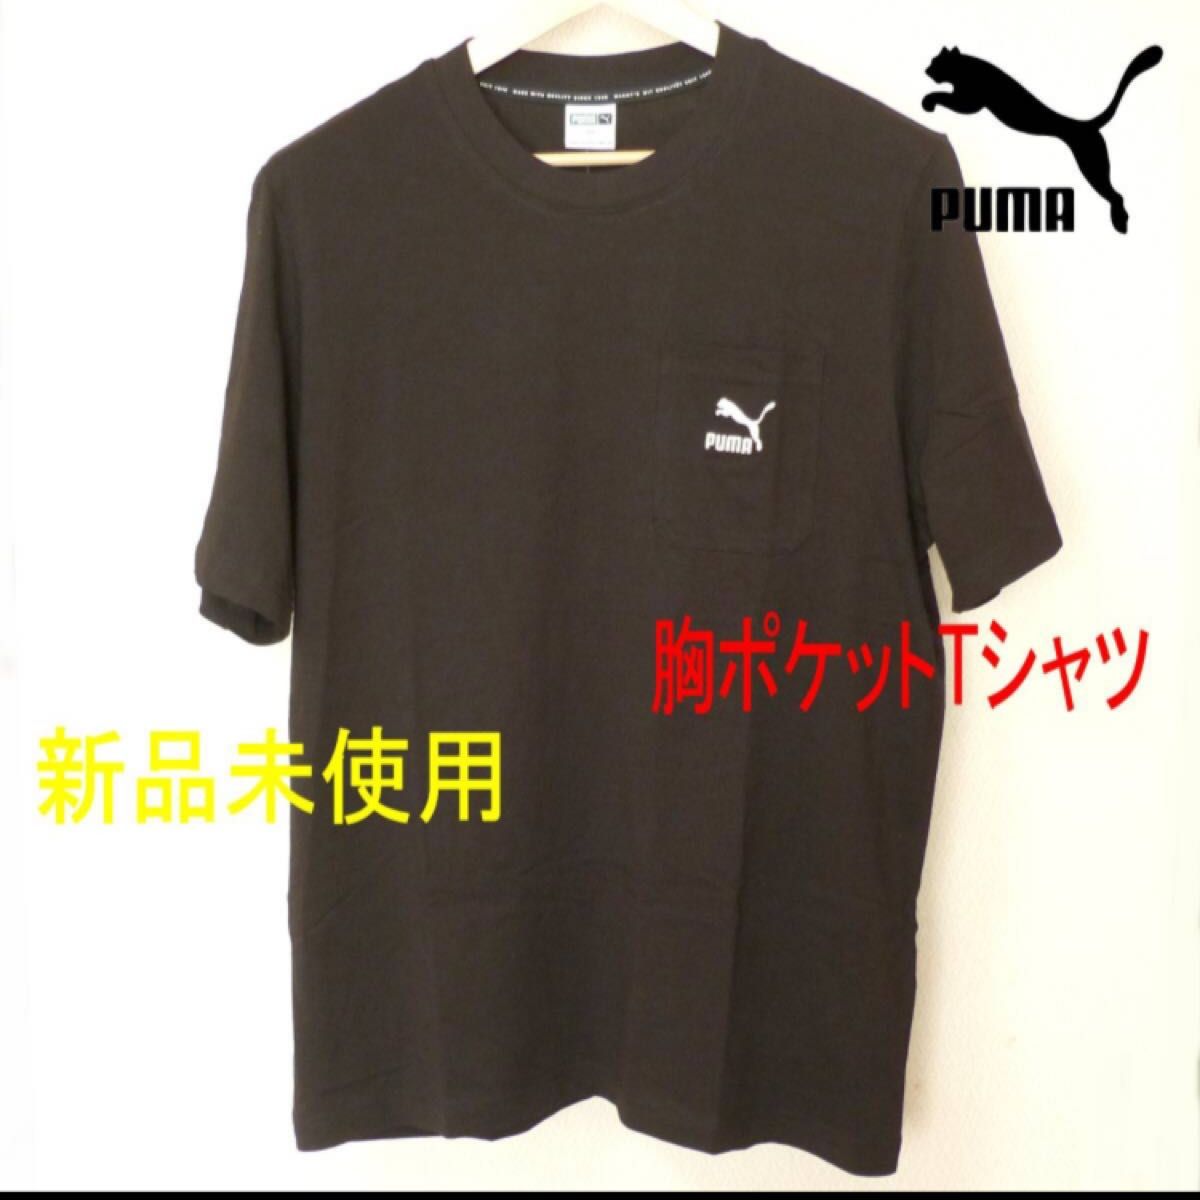 新品(メンズL)プーマPUMA 黒 胸ポケット付き刺繍ロゴTシャツ/ブラック